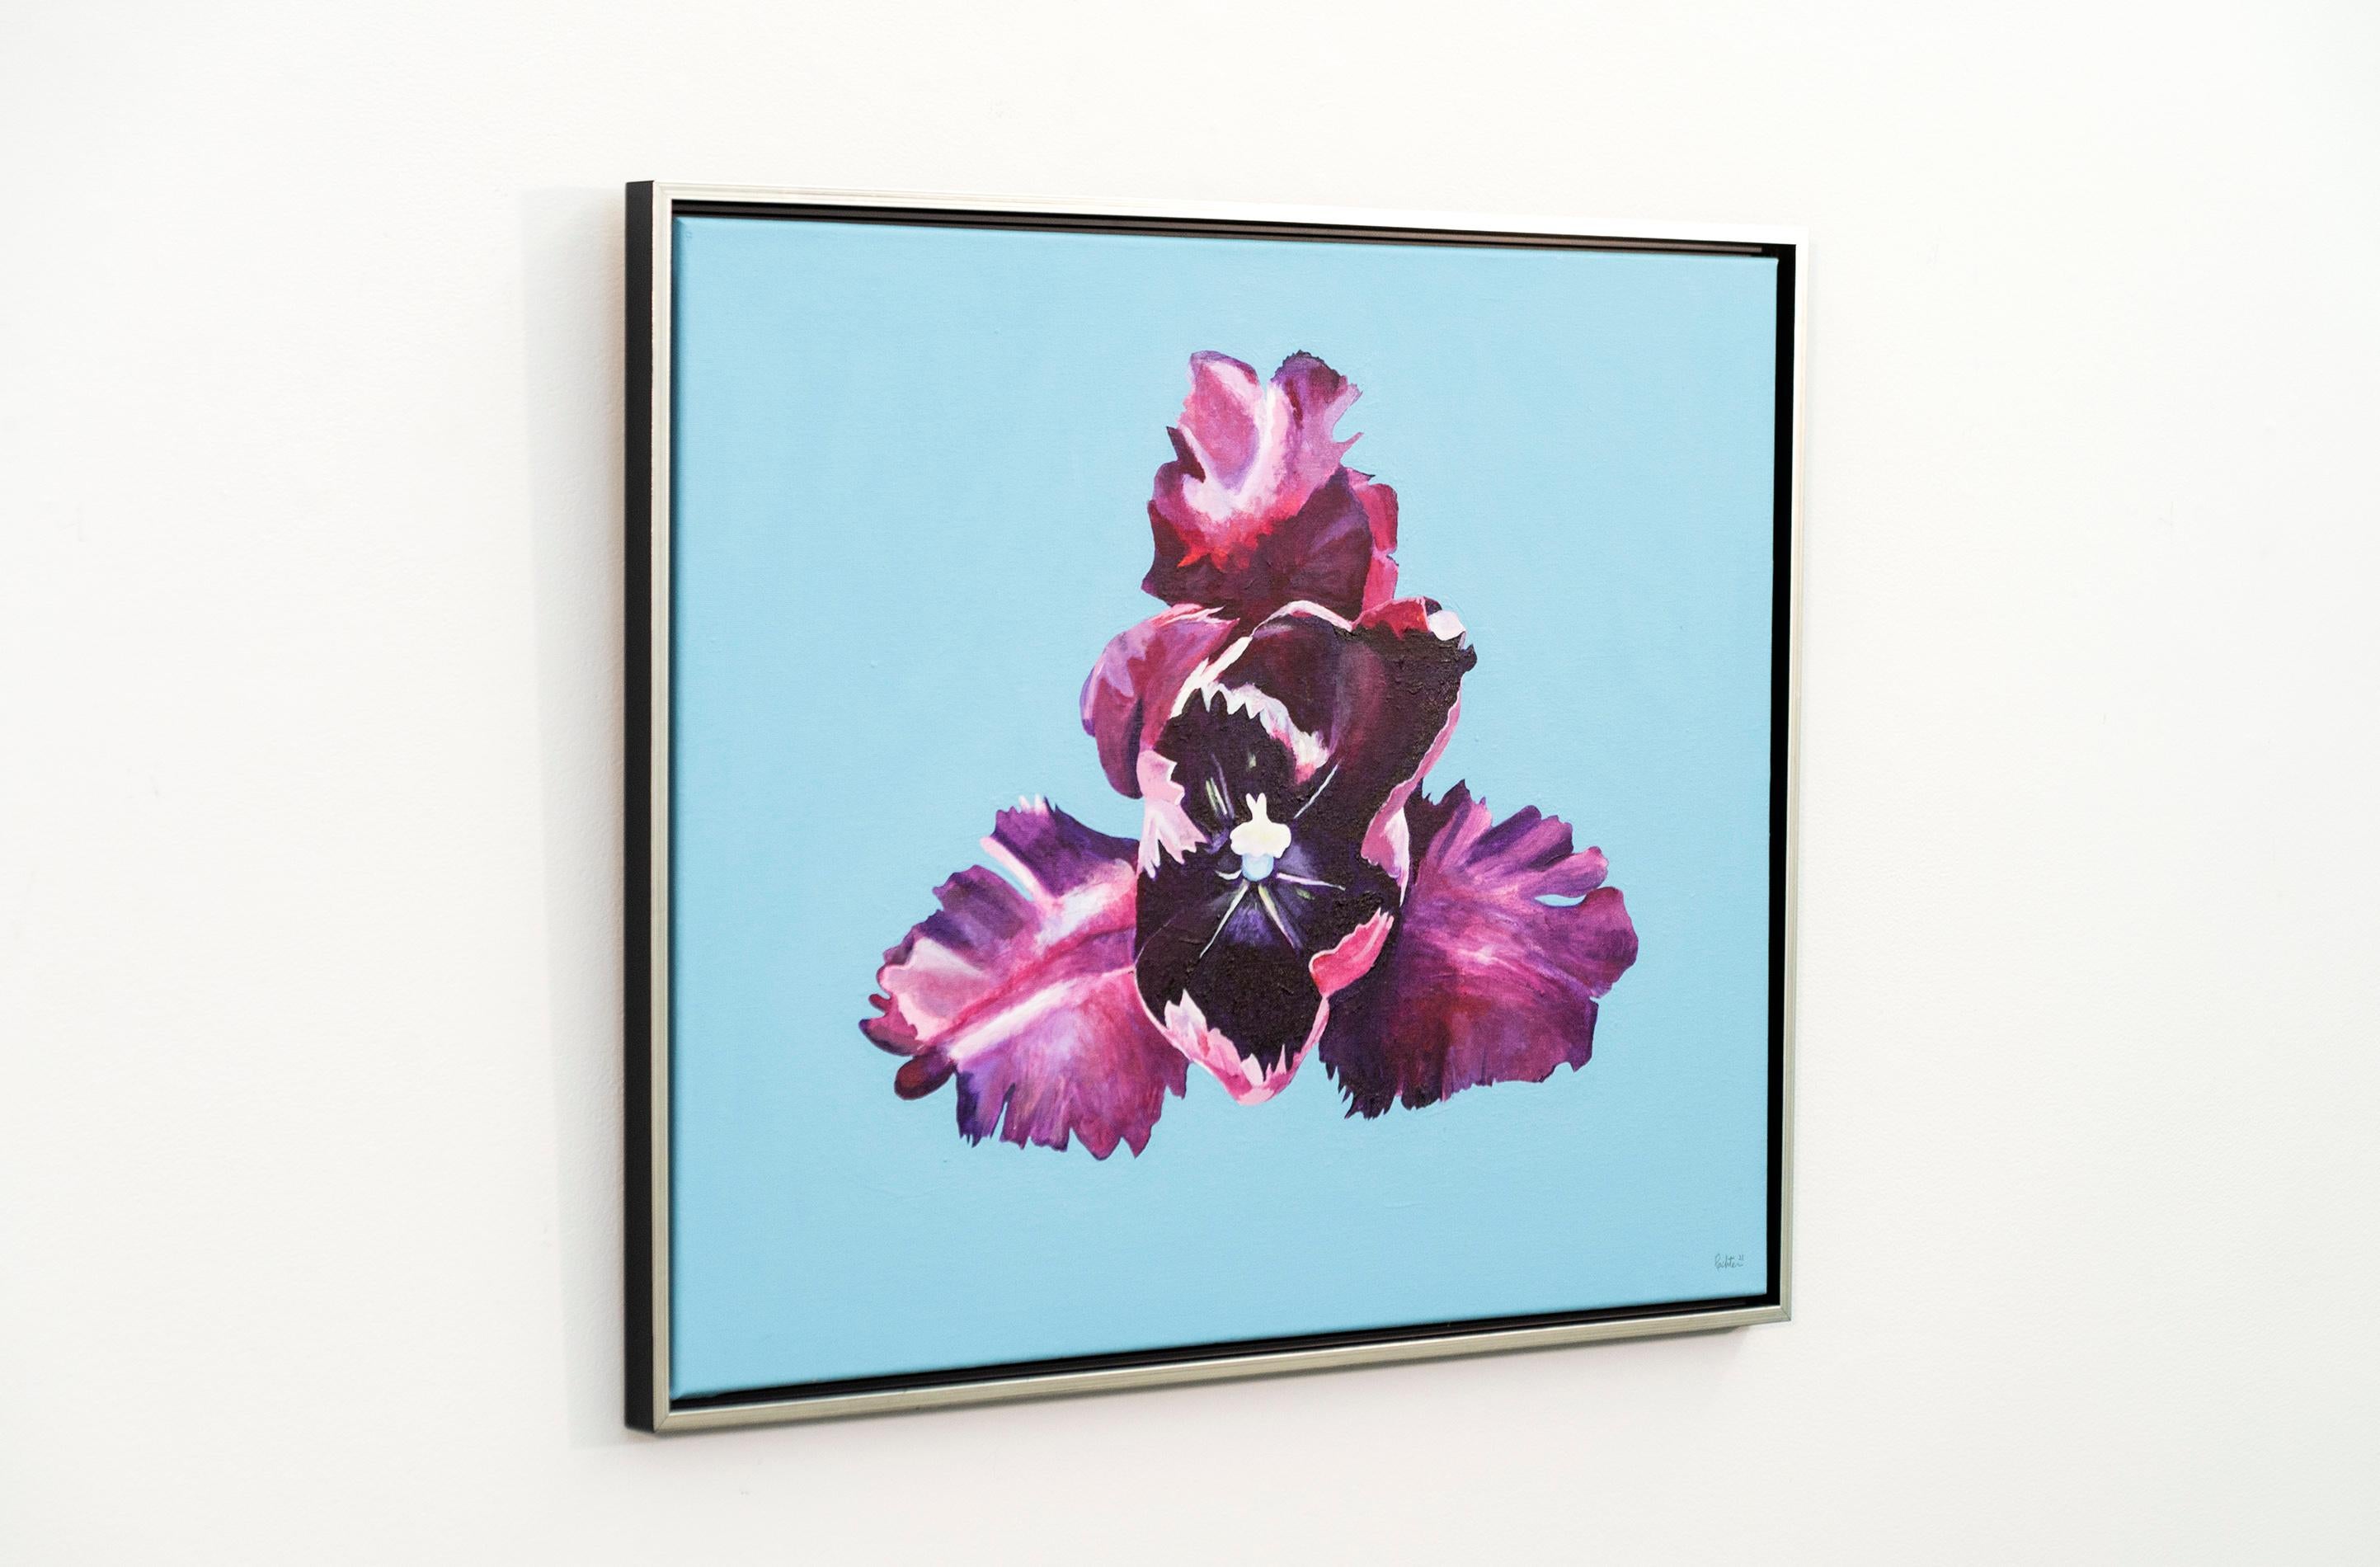 Iris - fleurs, pop-art, printemps, contemporain, acrylique sur toile - Contemporain Painting par Charles Pachter